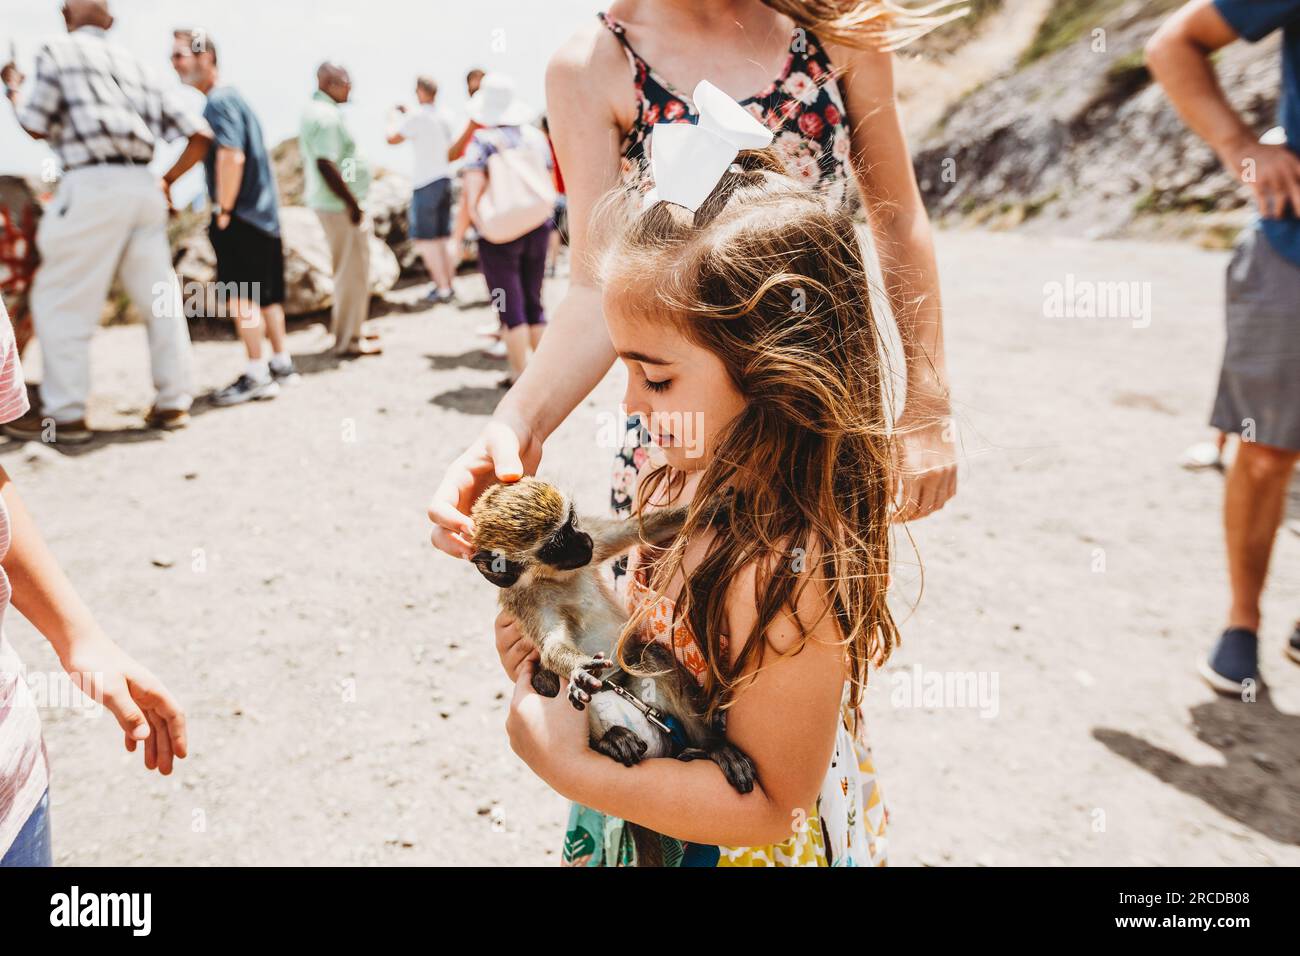 La giovane ragazza gioca con la scimmia nel punto turistico dell'isola di St Kitts Foto Stock